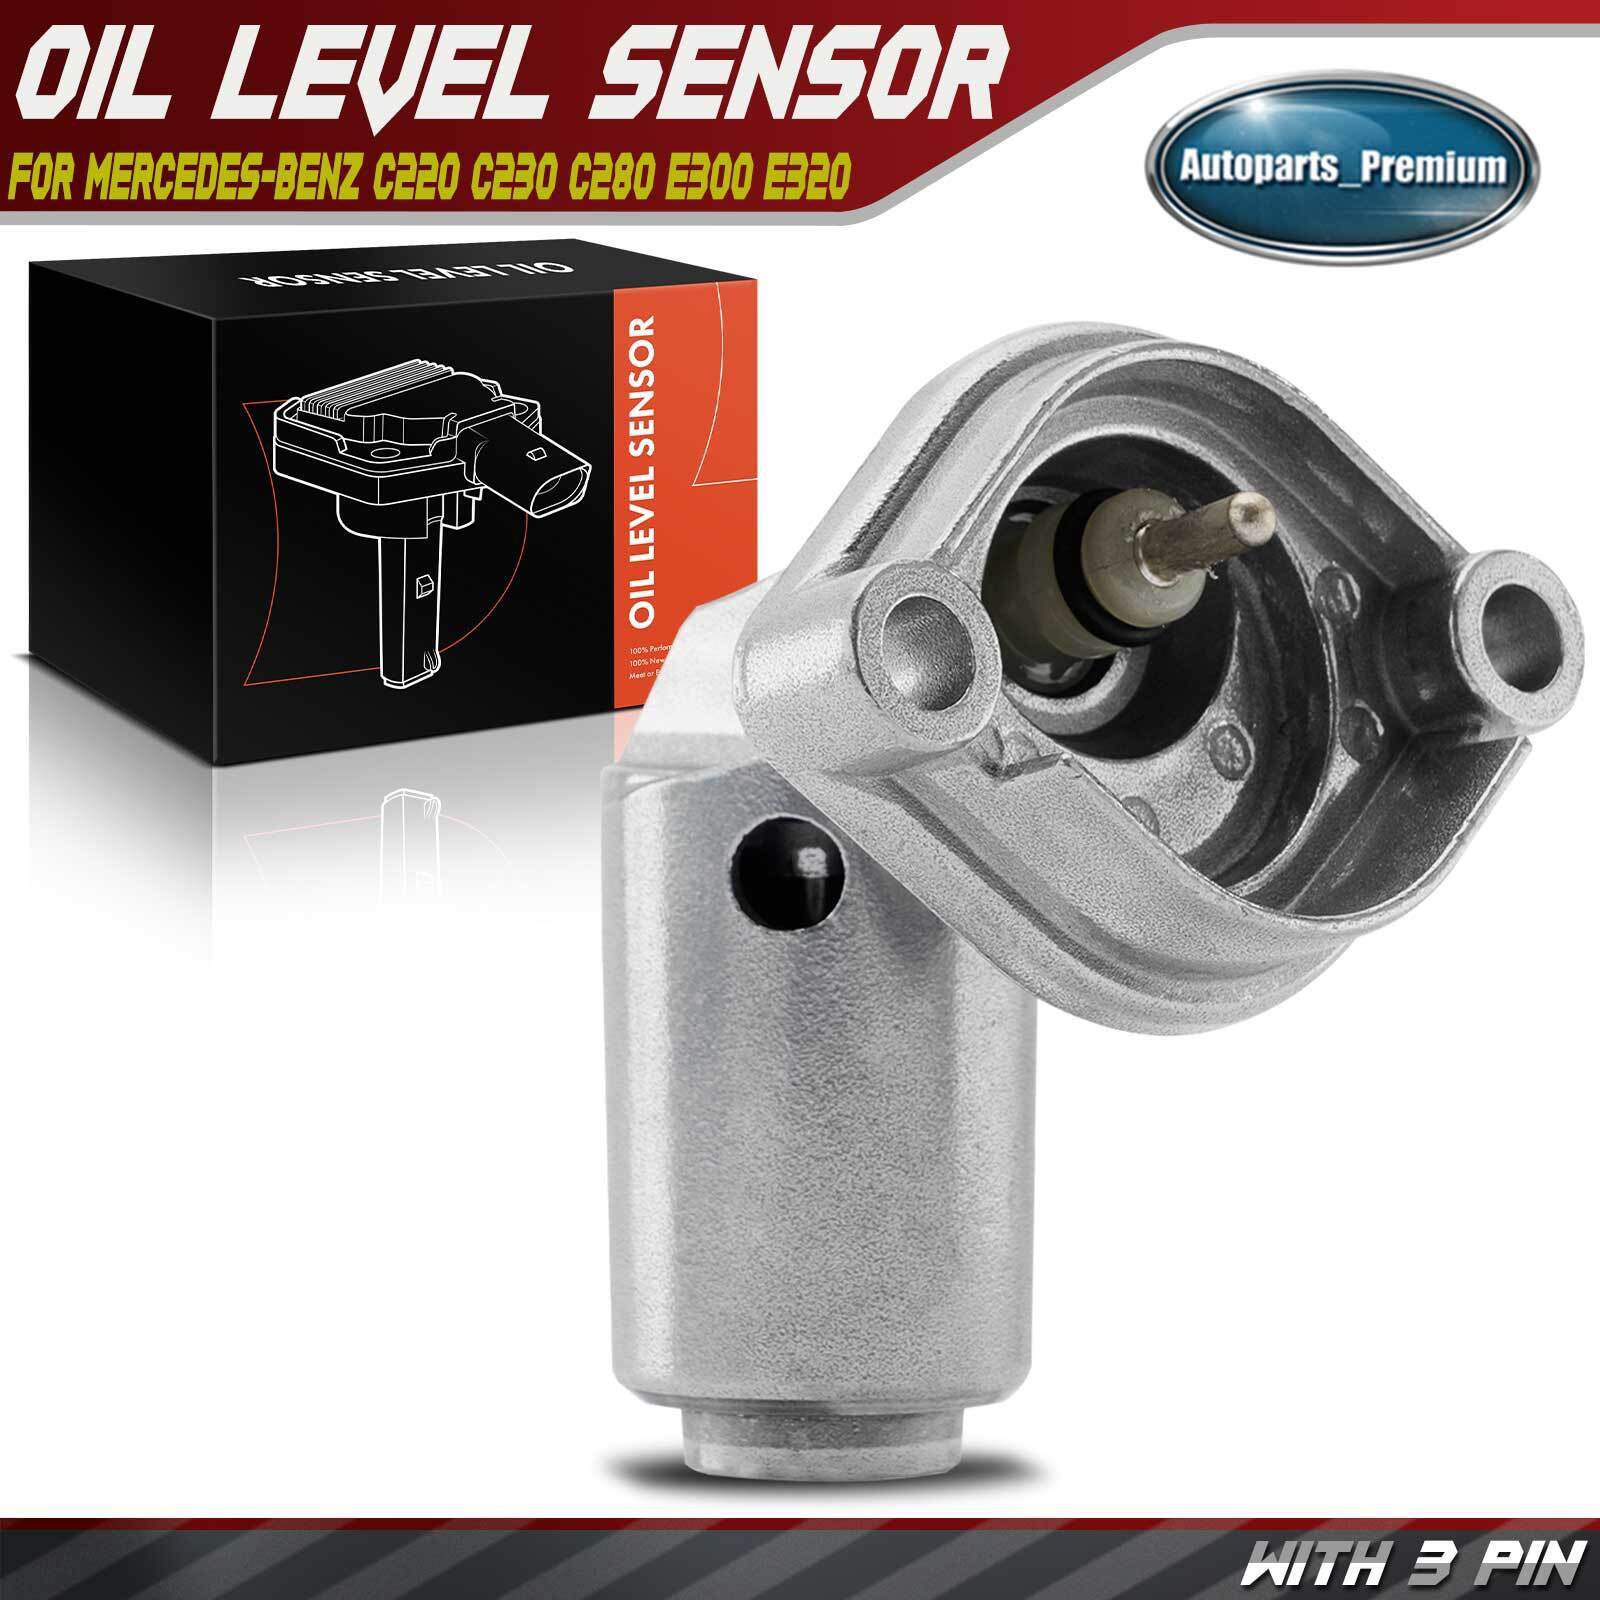 Engine Oil Level Sensor for Mercedes-Benz C220 C230 C280 C36 AMG E300 E320 S320